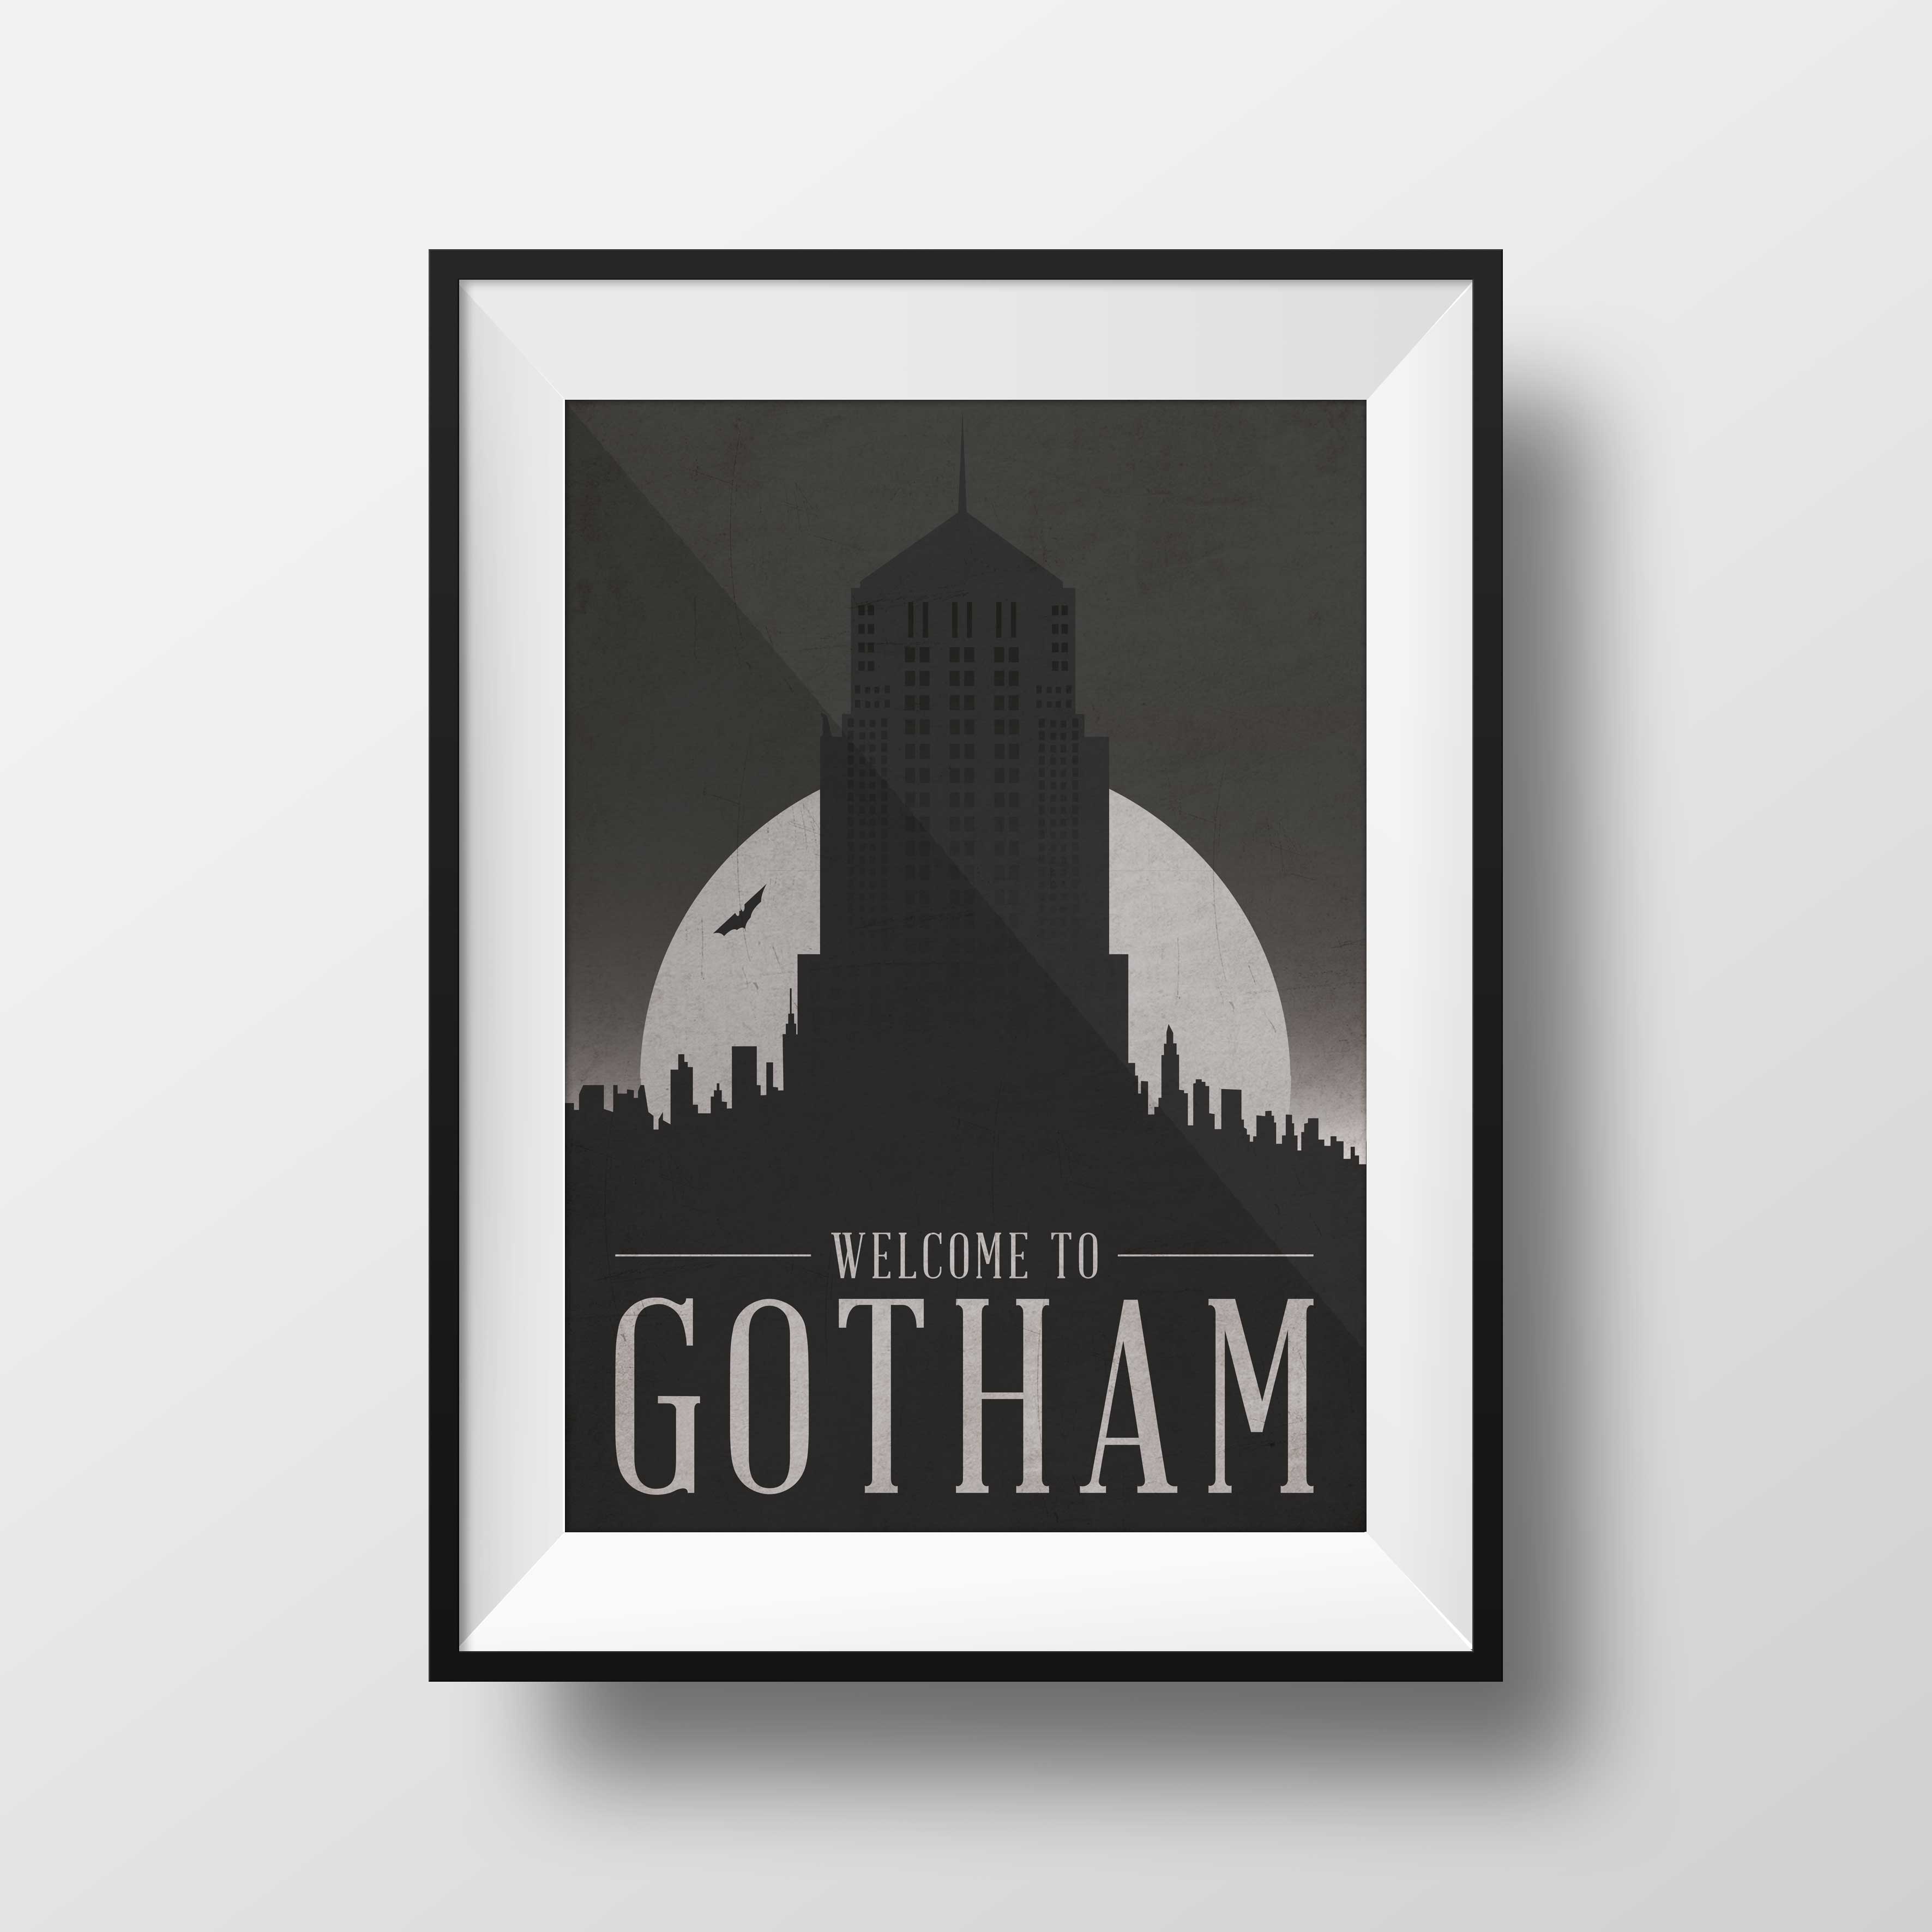 Gotham_Framed.jpg